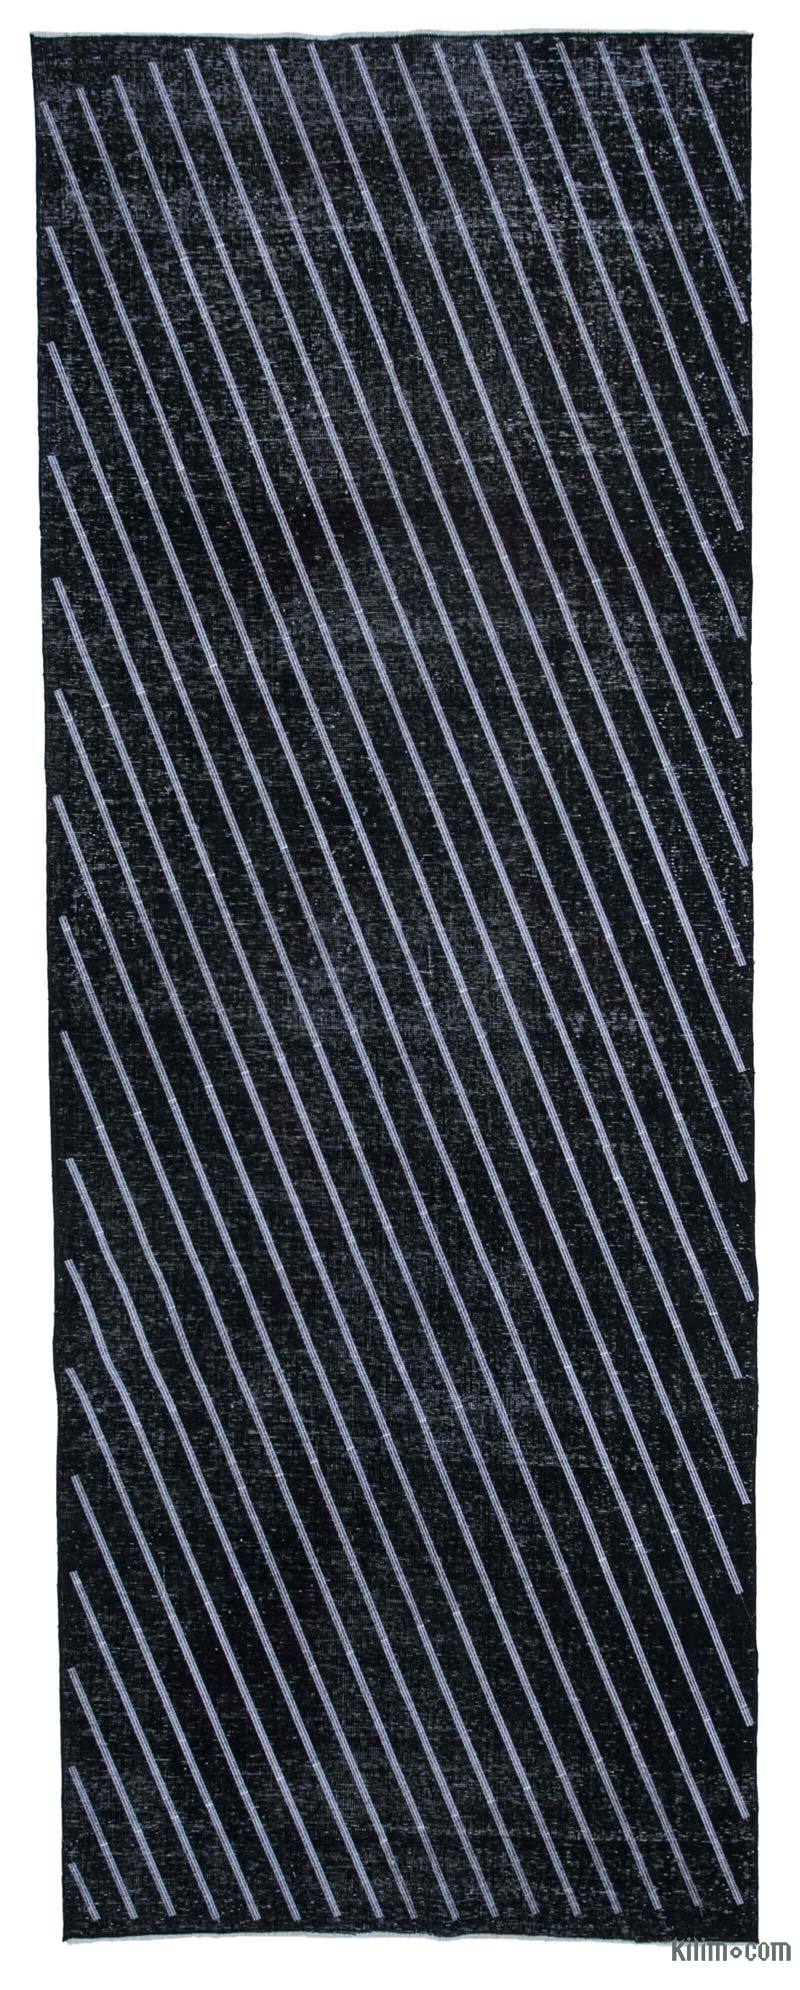 Siyah İşlemeli ve Boyalı El Dokuma Vintage Halı - 150 cm x 400 cm - K0038634